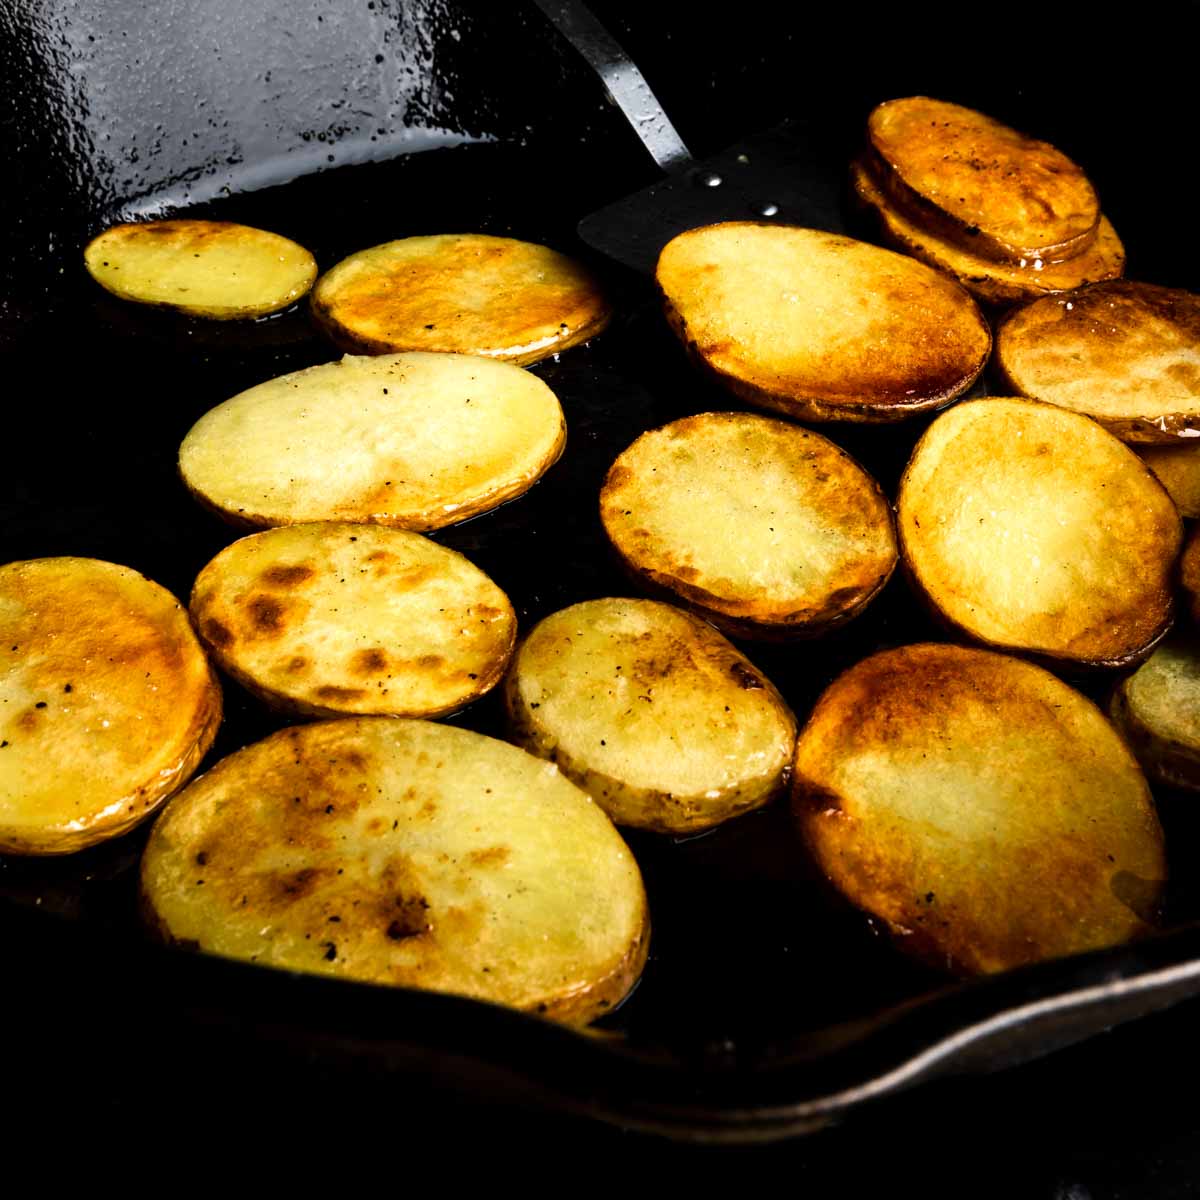 Bring potato slices in oil